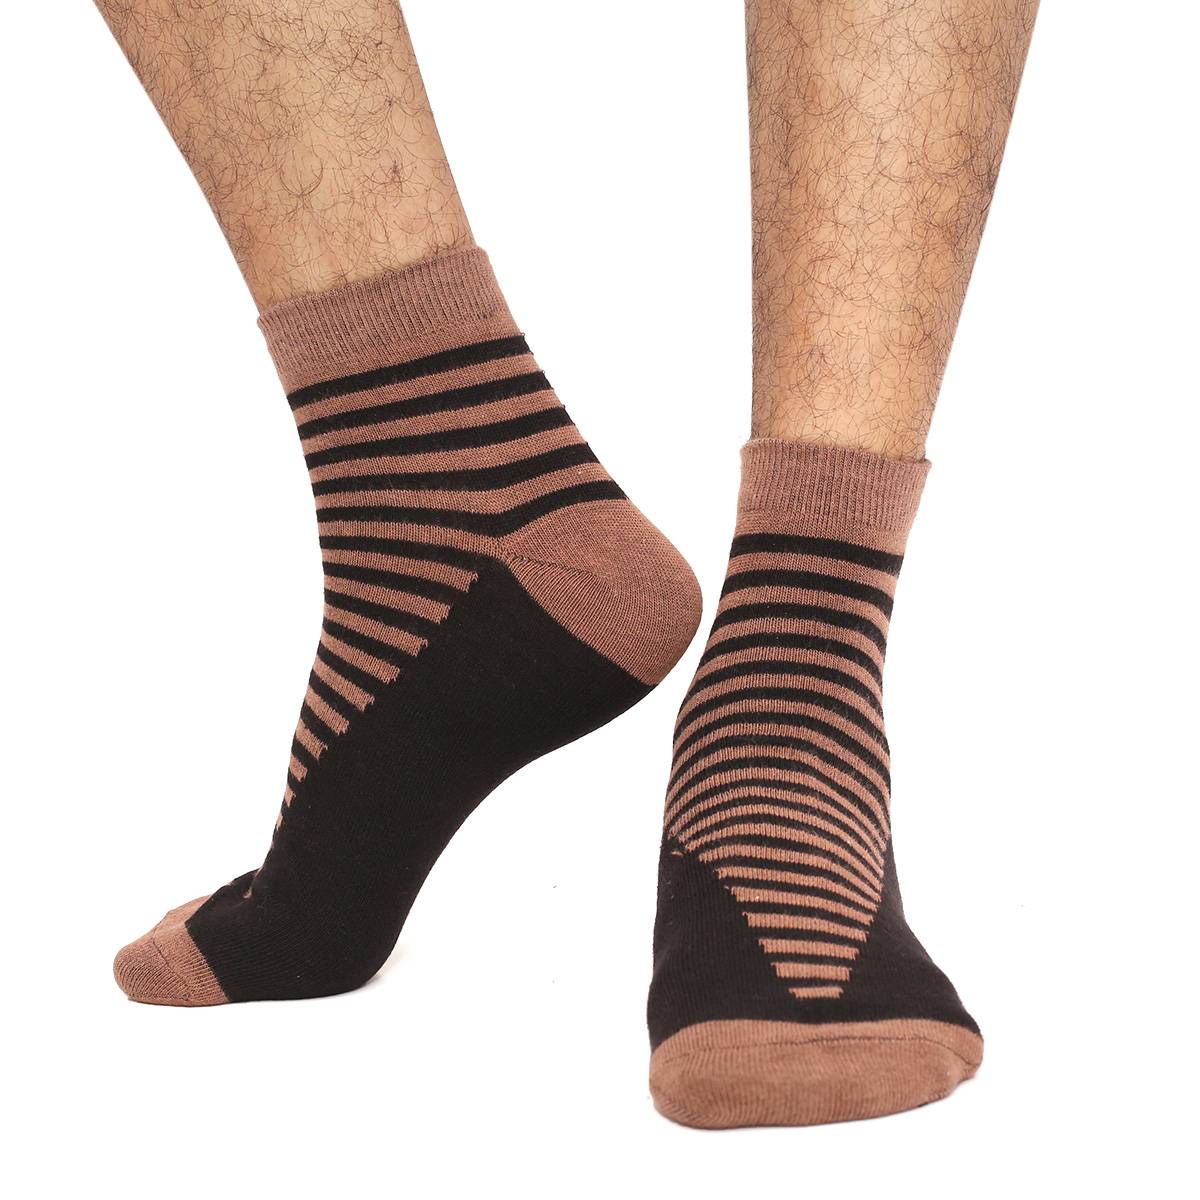 Swan Goodwill Ankle Socks for Men